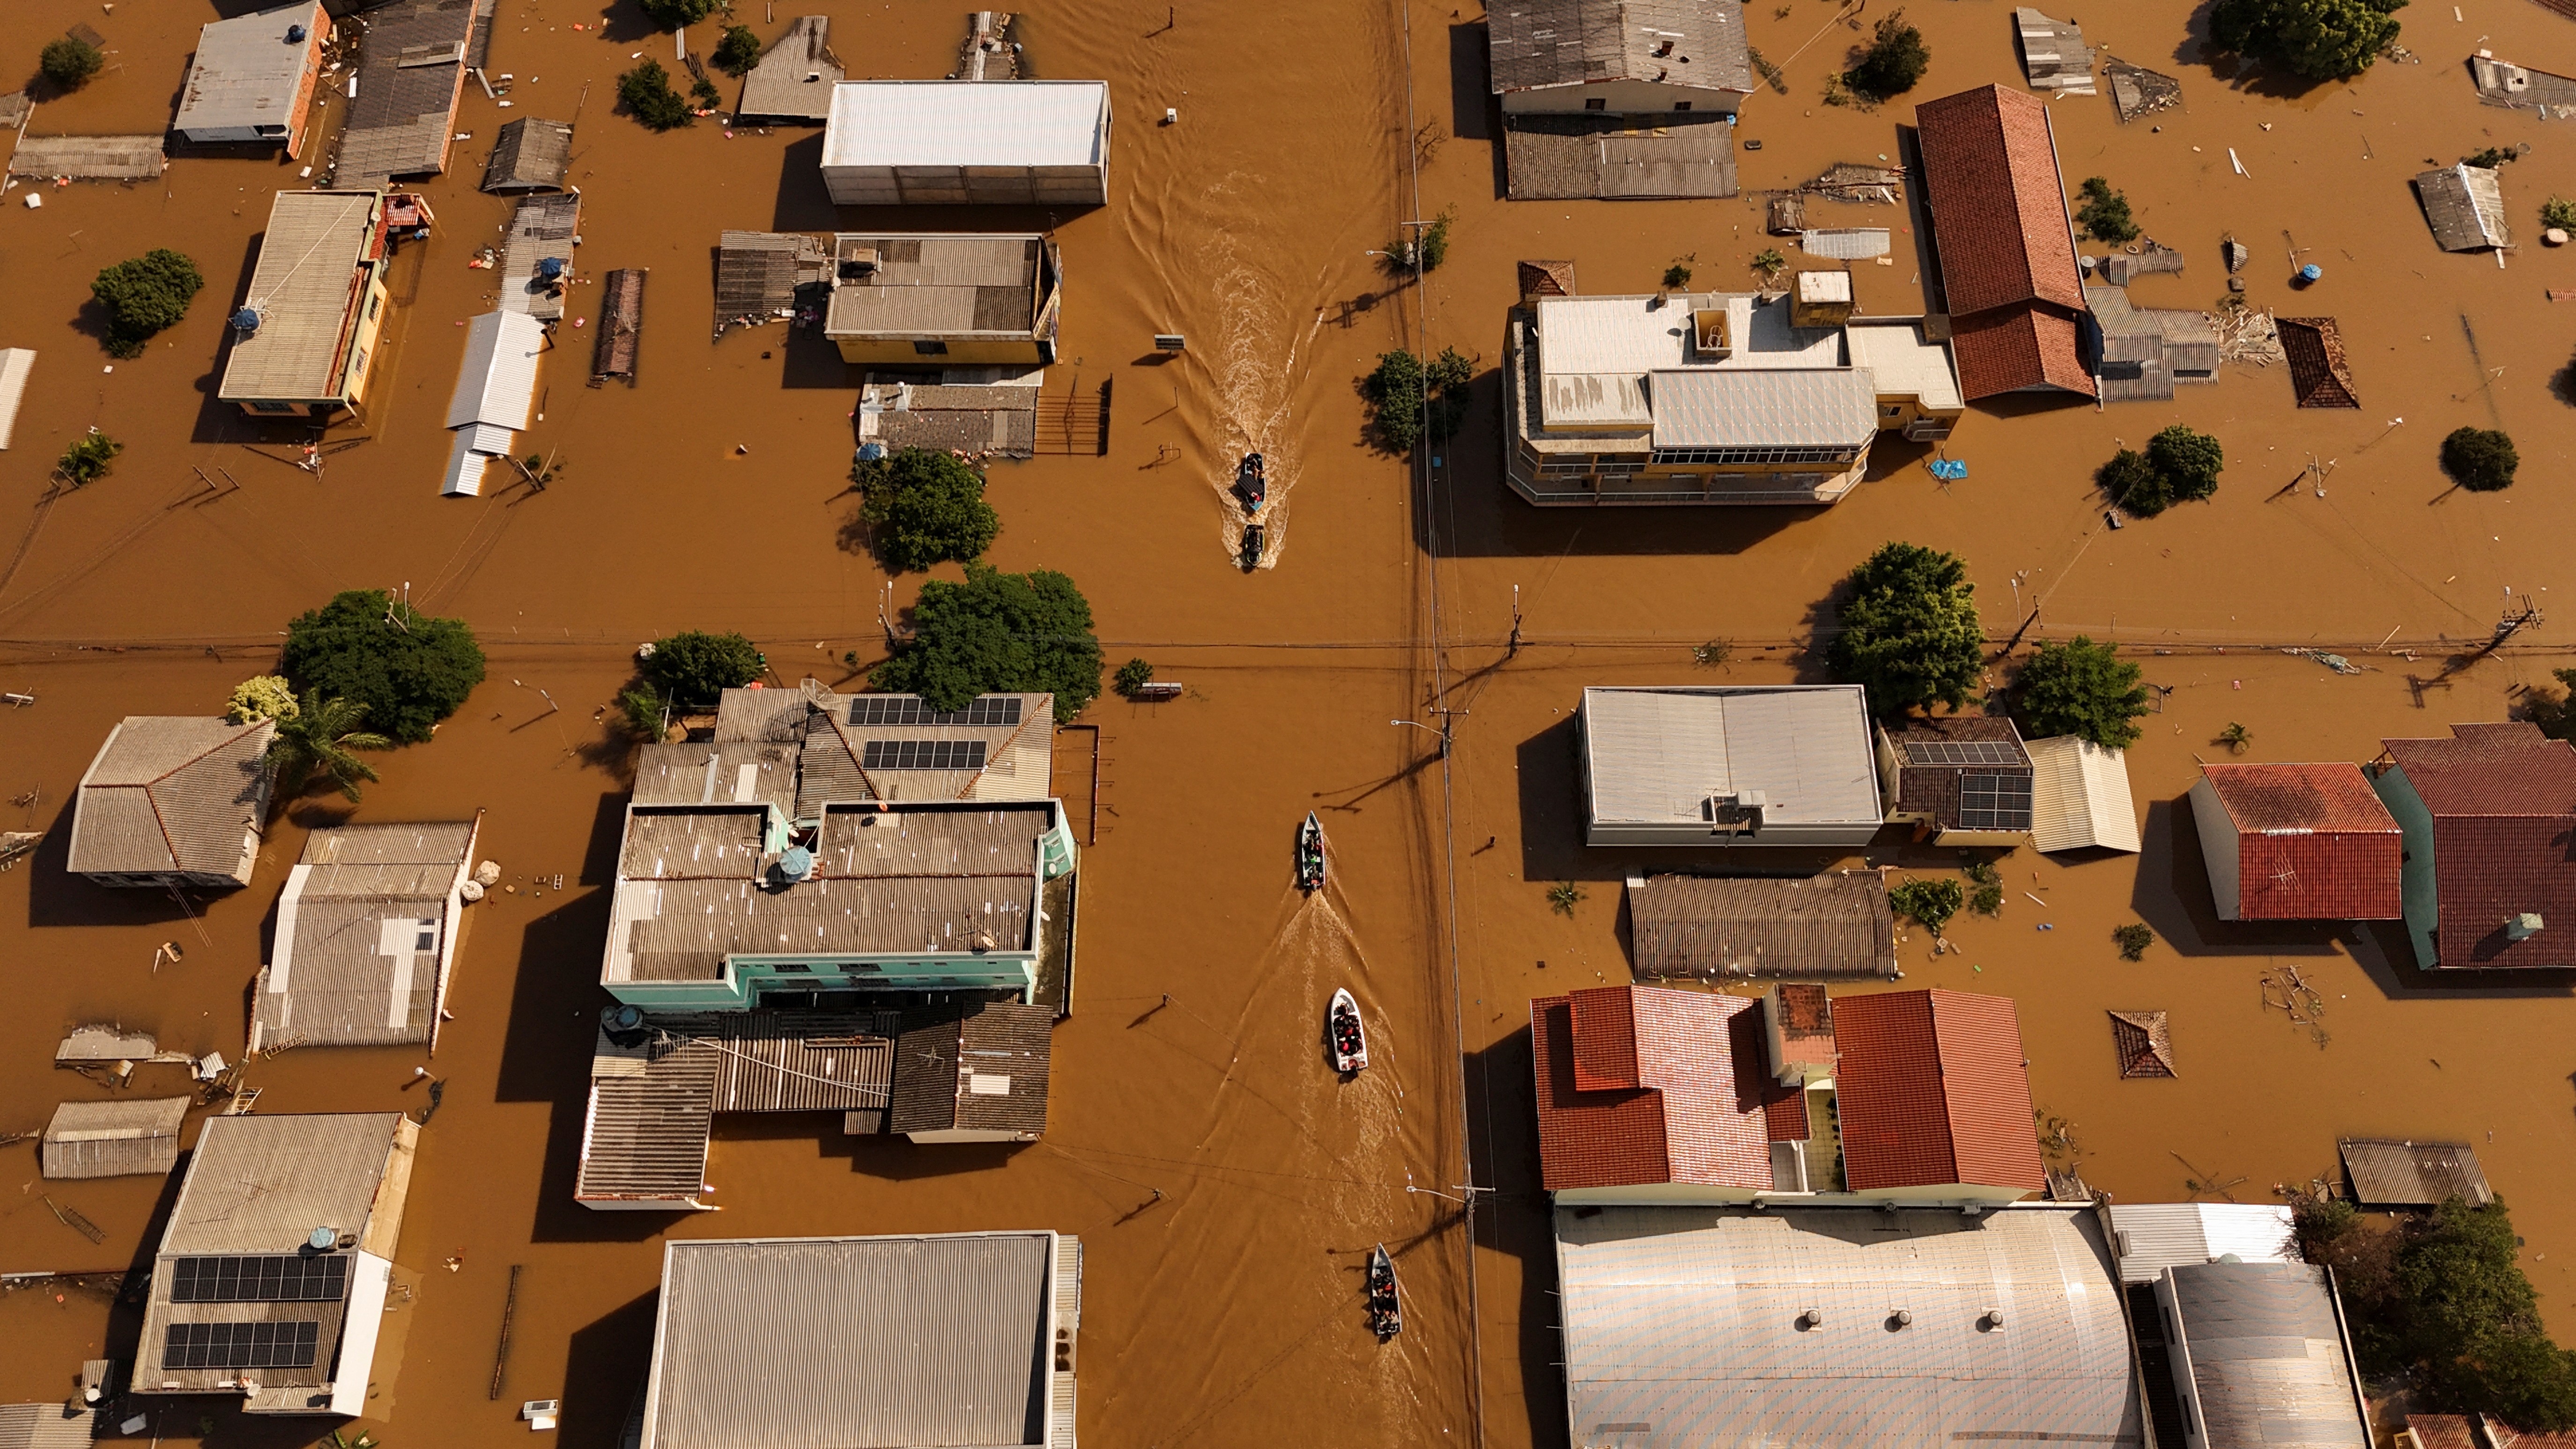 Enchentes no Rio Grande do Sul: 'A cidade ficou em colapso', diz mineira que reside no município de Canoas